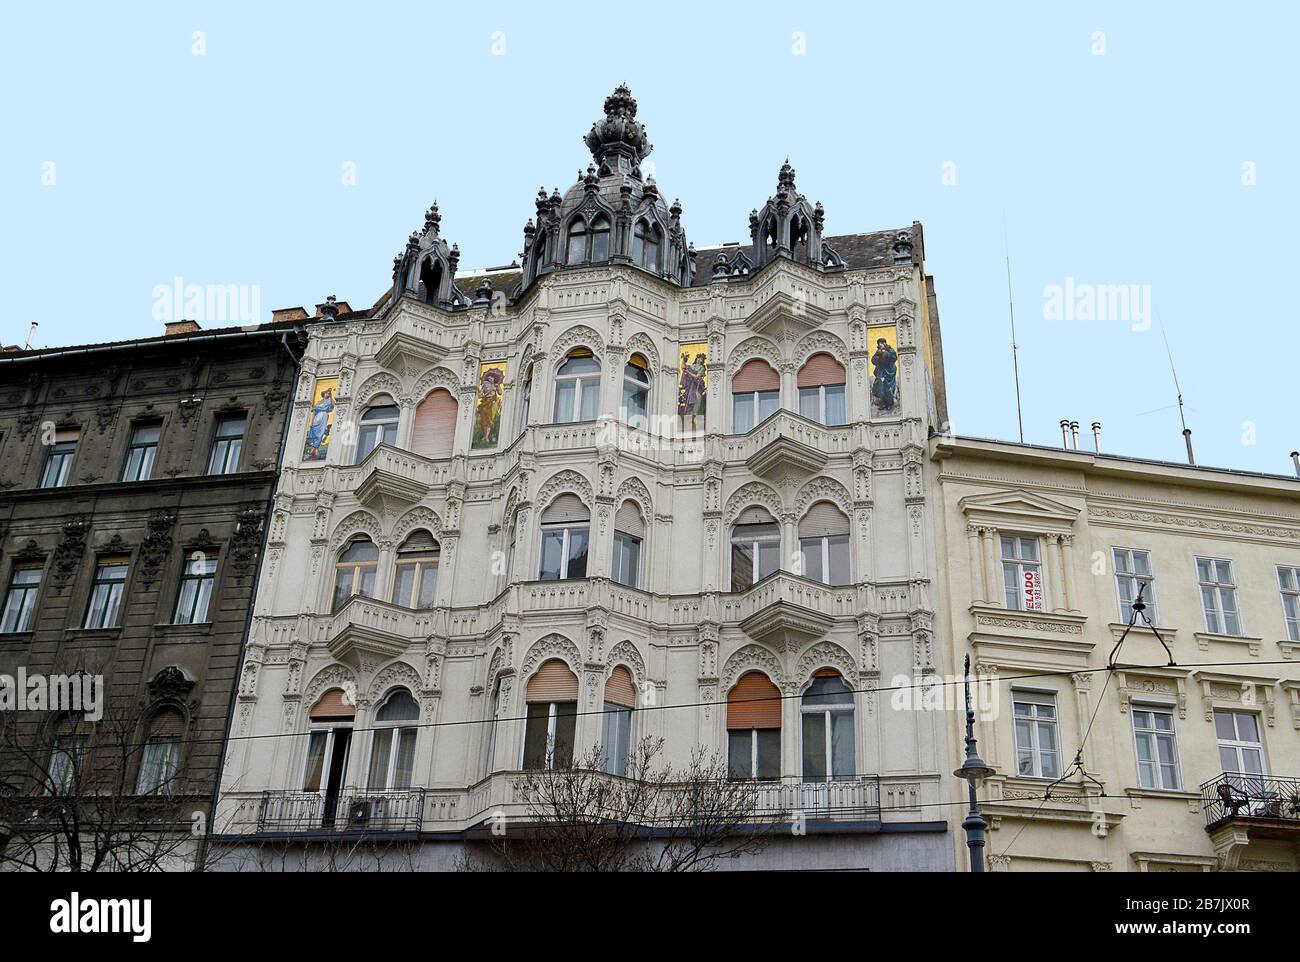 BUDAPEST, UNGARN - 10. FEBRUAR 2020: Das von Erno Schonnen entworfene Severa Haus am Karoly Boulevard wurde um 1900 erbaut und verfügt über vier nouve Kunst Stockfoto